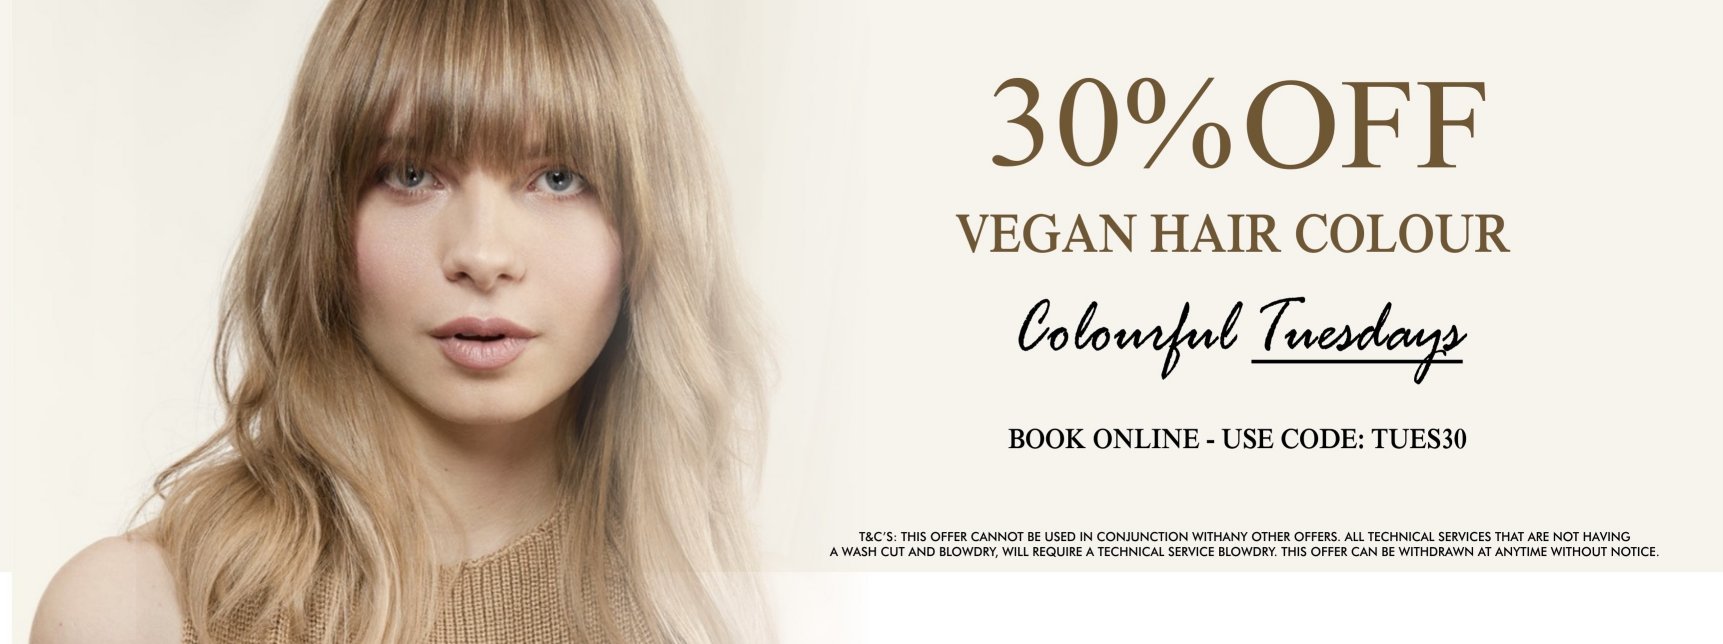 Hair Salon Vegan Colour Offer